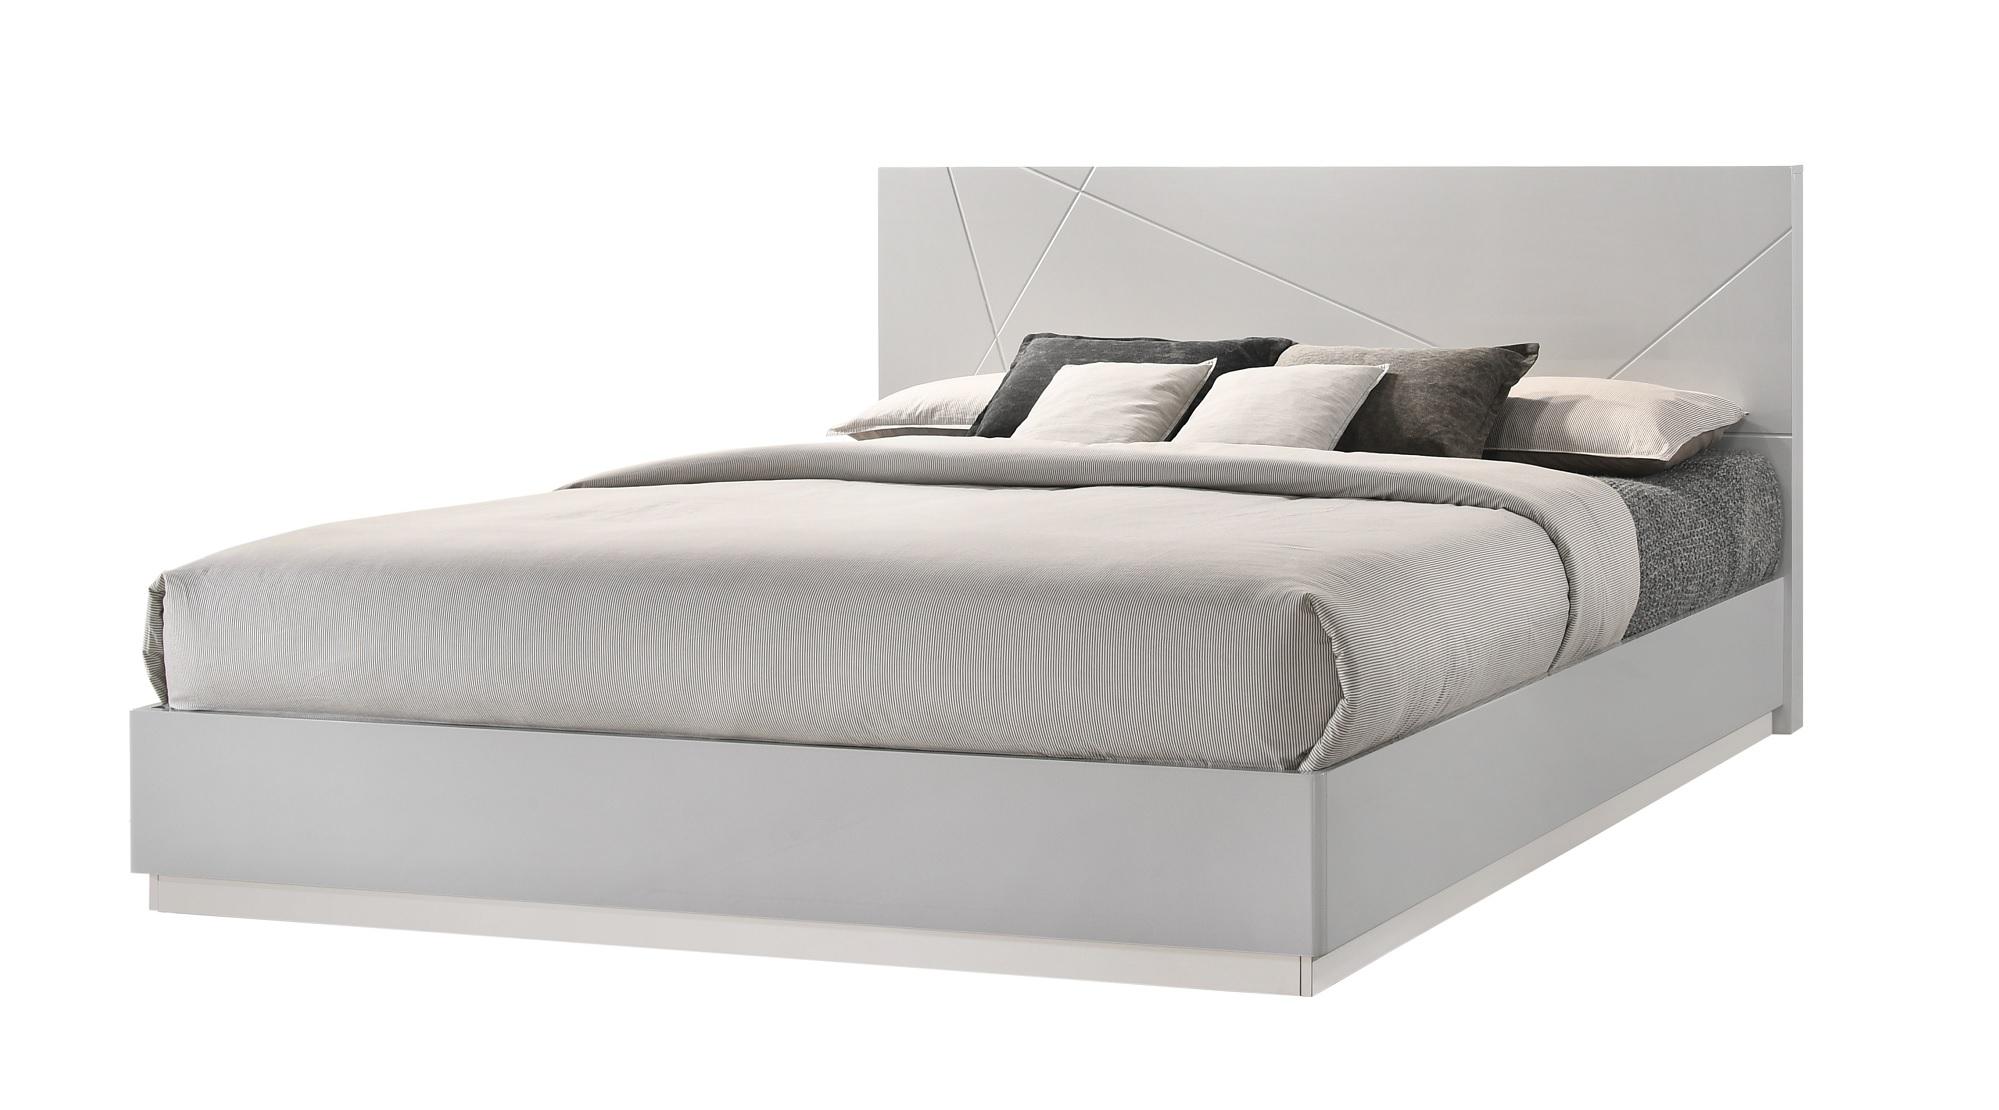 

    
Contemporary Grey Lacquer Finish Platform Queen Size Bedroom Set 3Pcs J&M Naples
